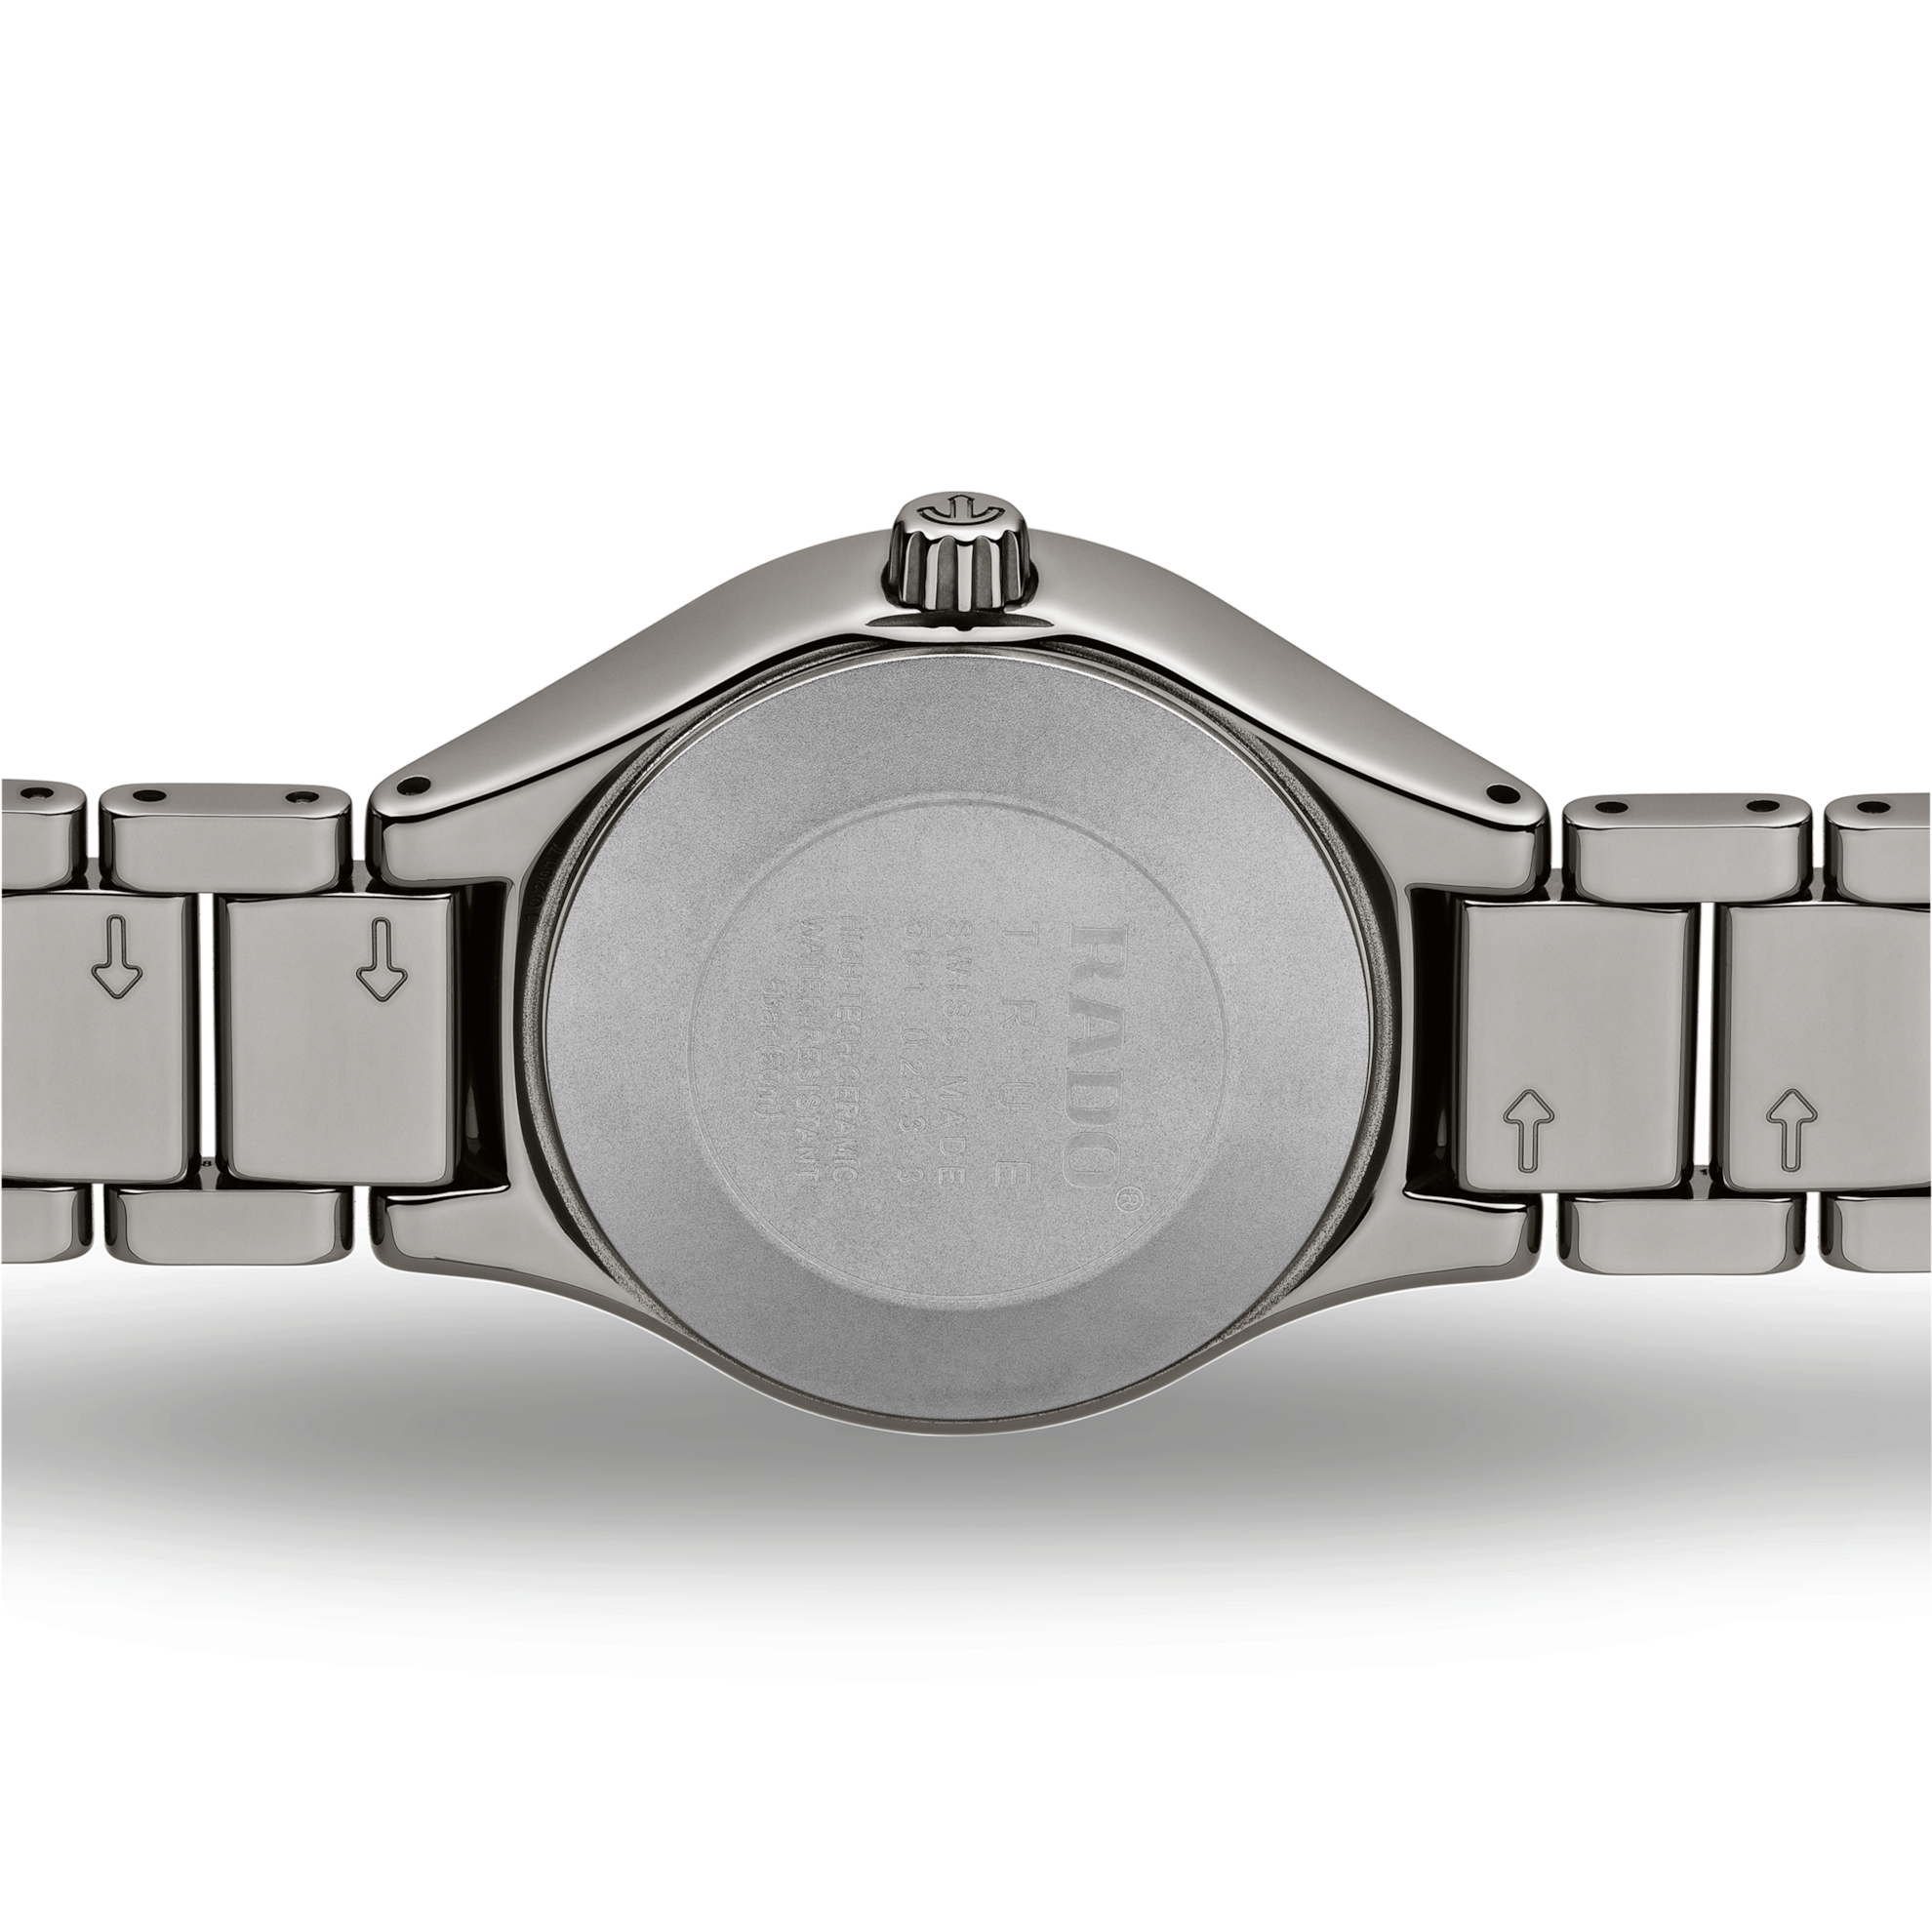 Rado True Automatic Diamonds Grey Dial Women's Watch - Kamal Watch Company